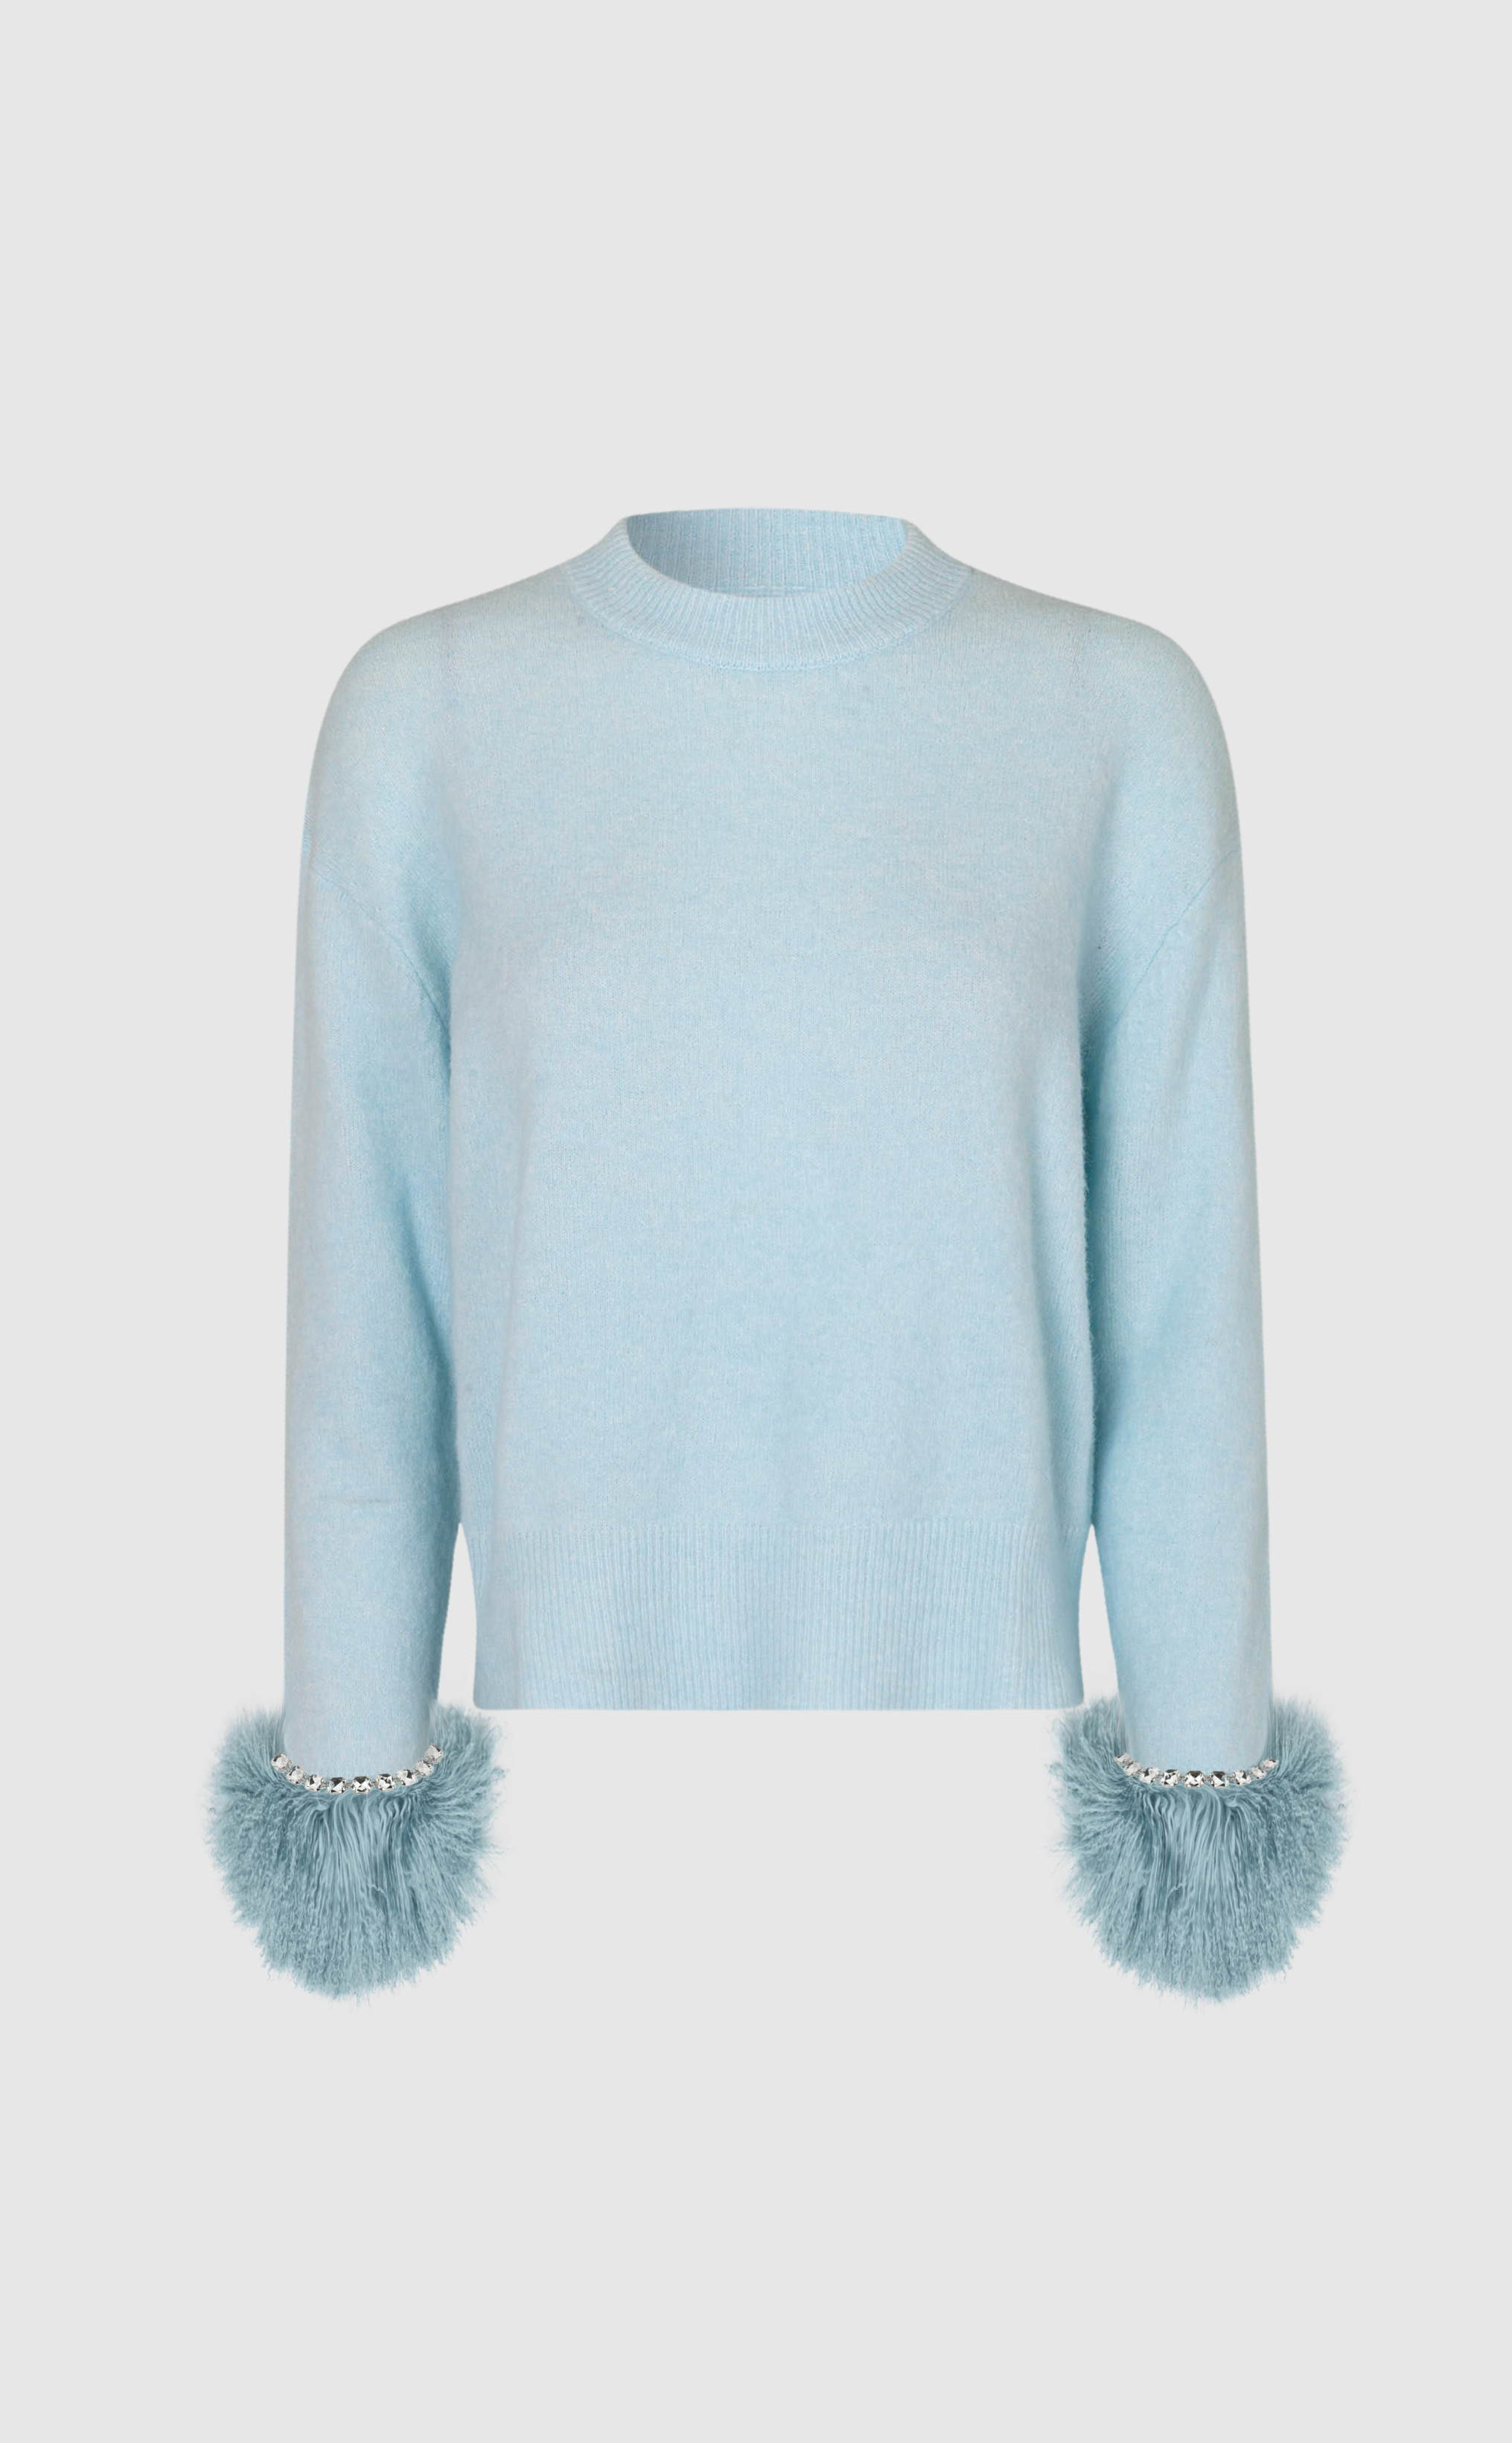 Gigi long sleeve sweater in blue